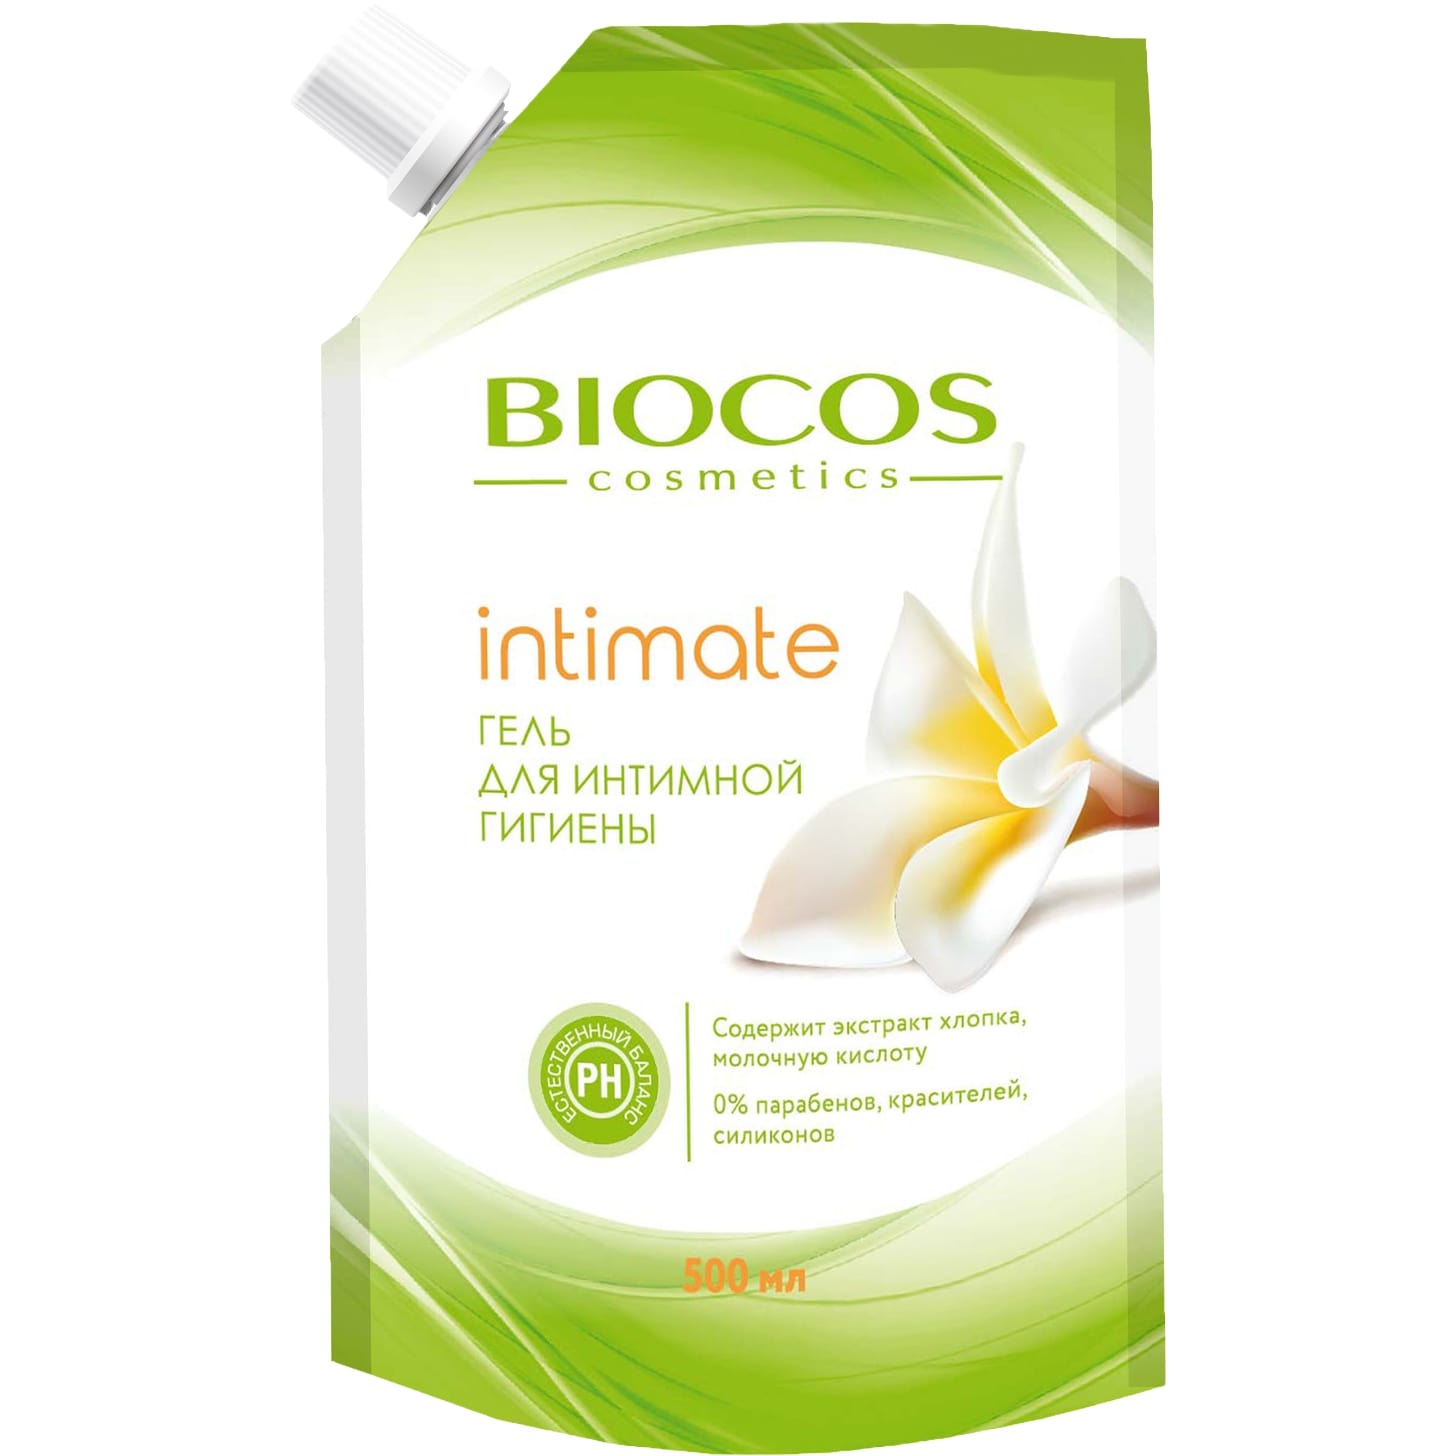 Гель для интимной гигиены BioCos intimate с экстрактом хлопка и молочной кислотой 500 мл экогель wonderlab для интимной гигиены 0 54 л